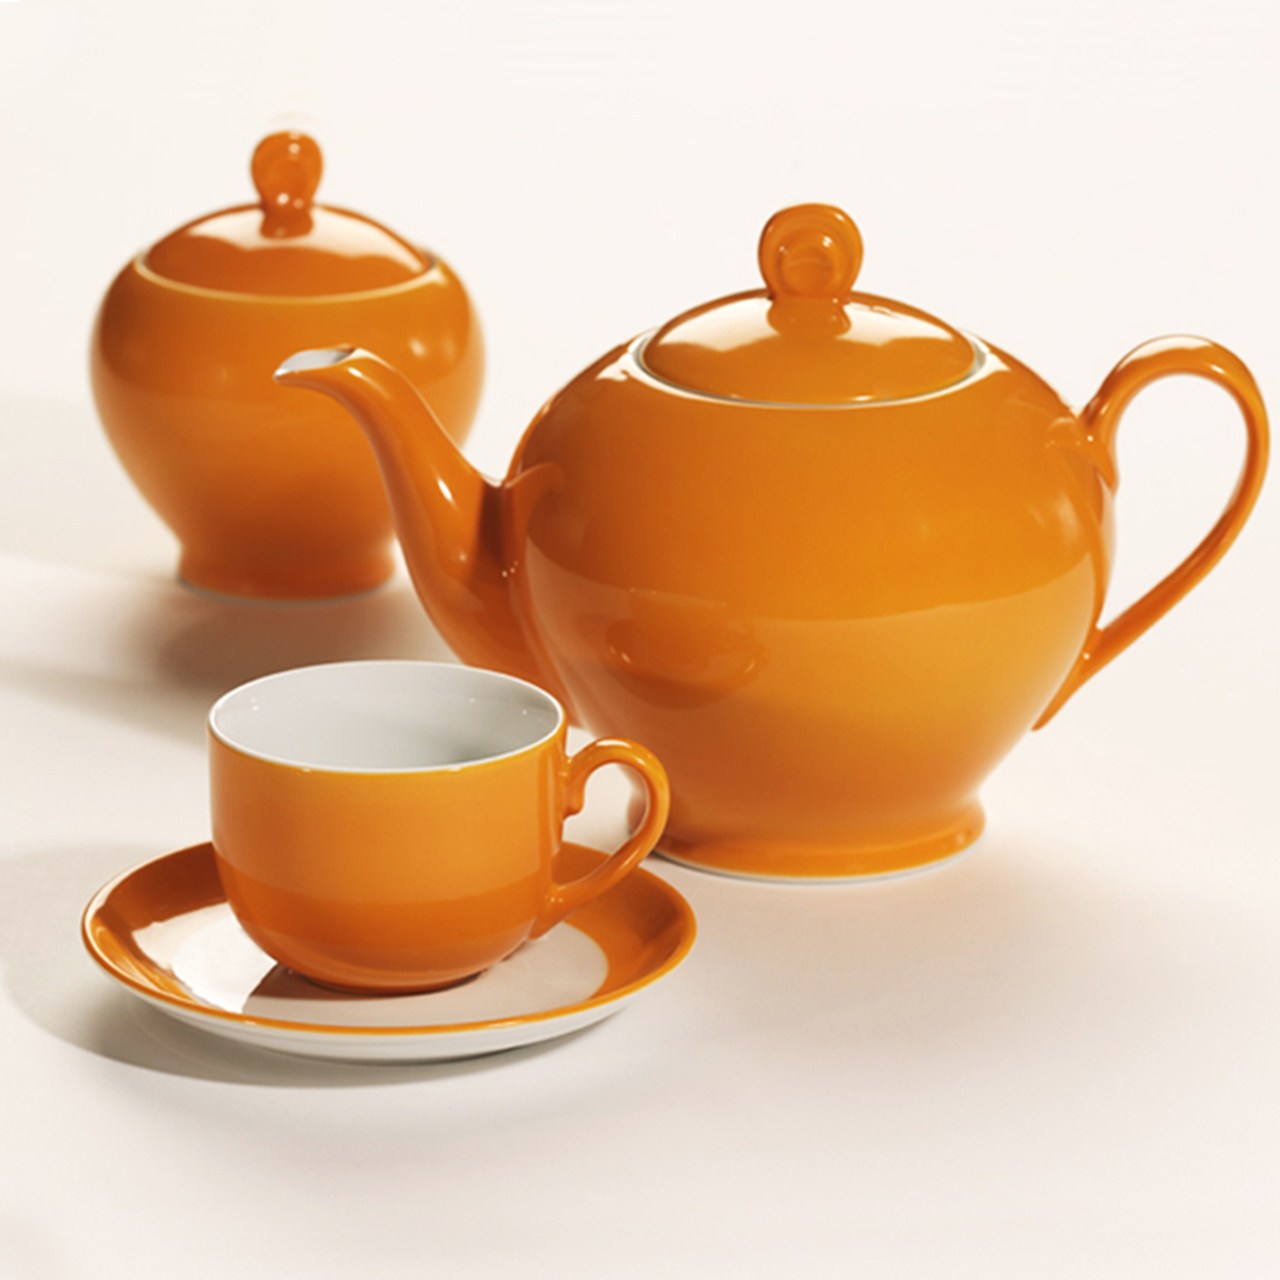 سرویس چینی 17 پارچه چای خوری چینی زرین ایران سری ایتالیا اف طرح نارنج درجه عالی